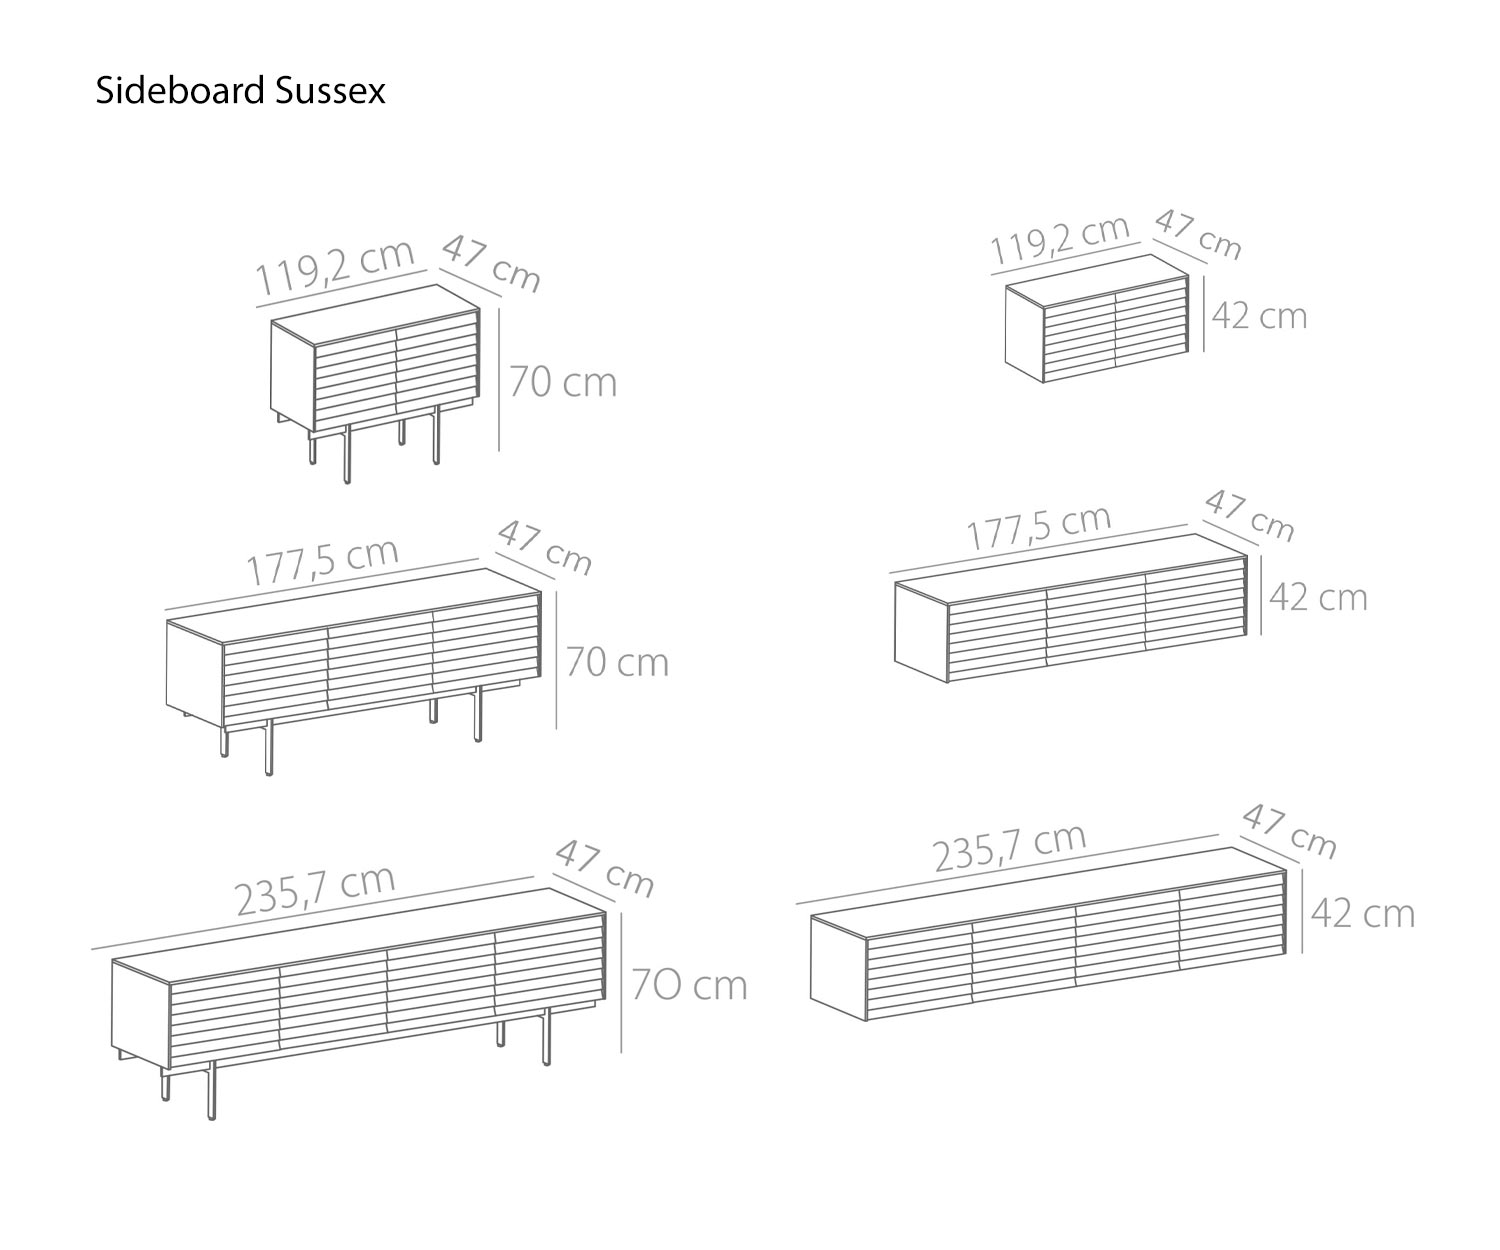 Design dressoir Sussex van Punt breedte 119 cm 177 cm 235 cm schetsafmetingen maten